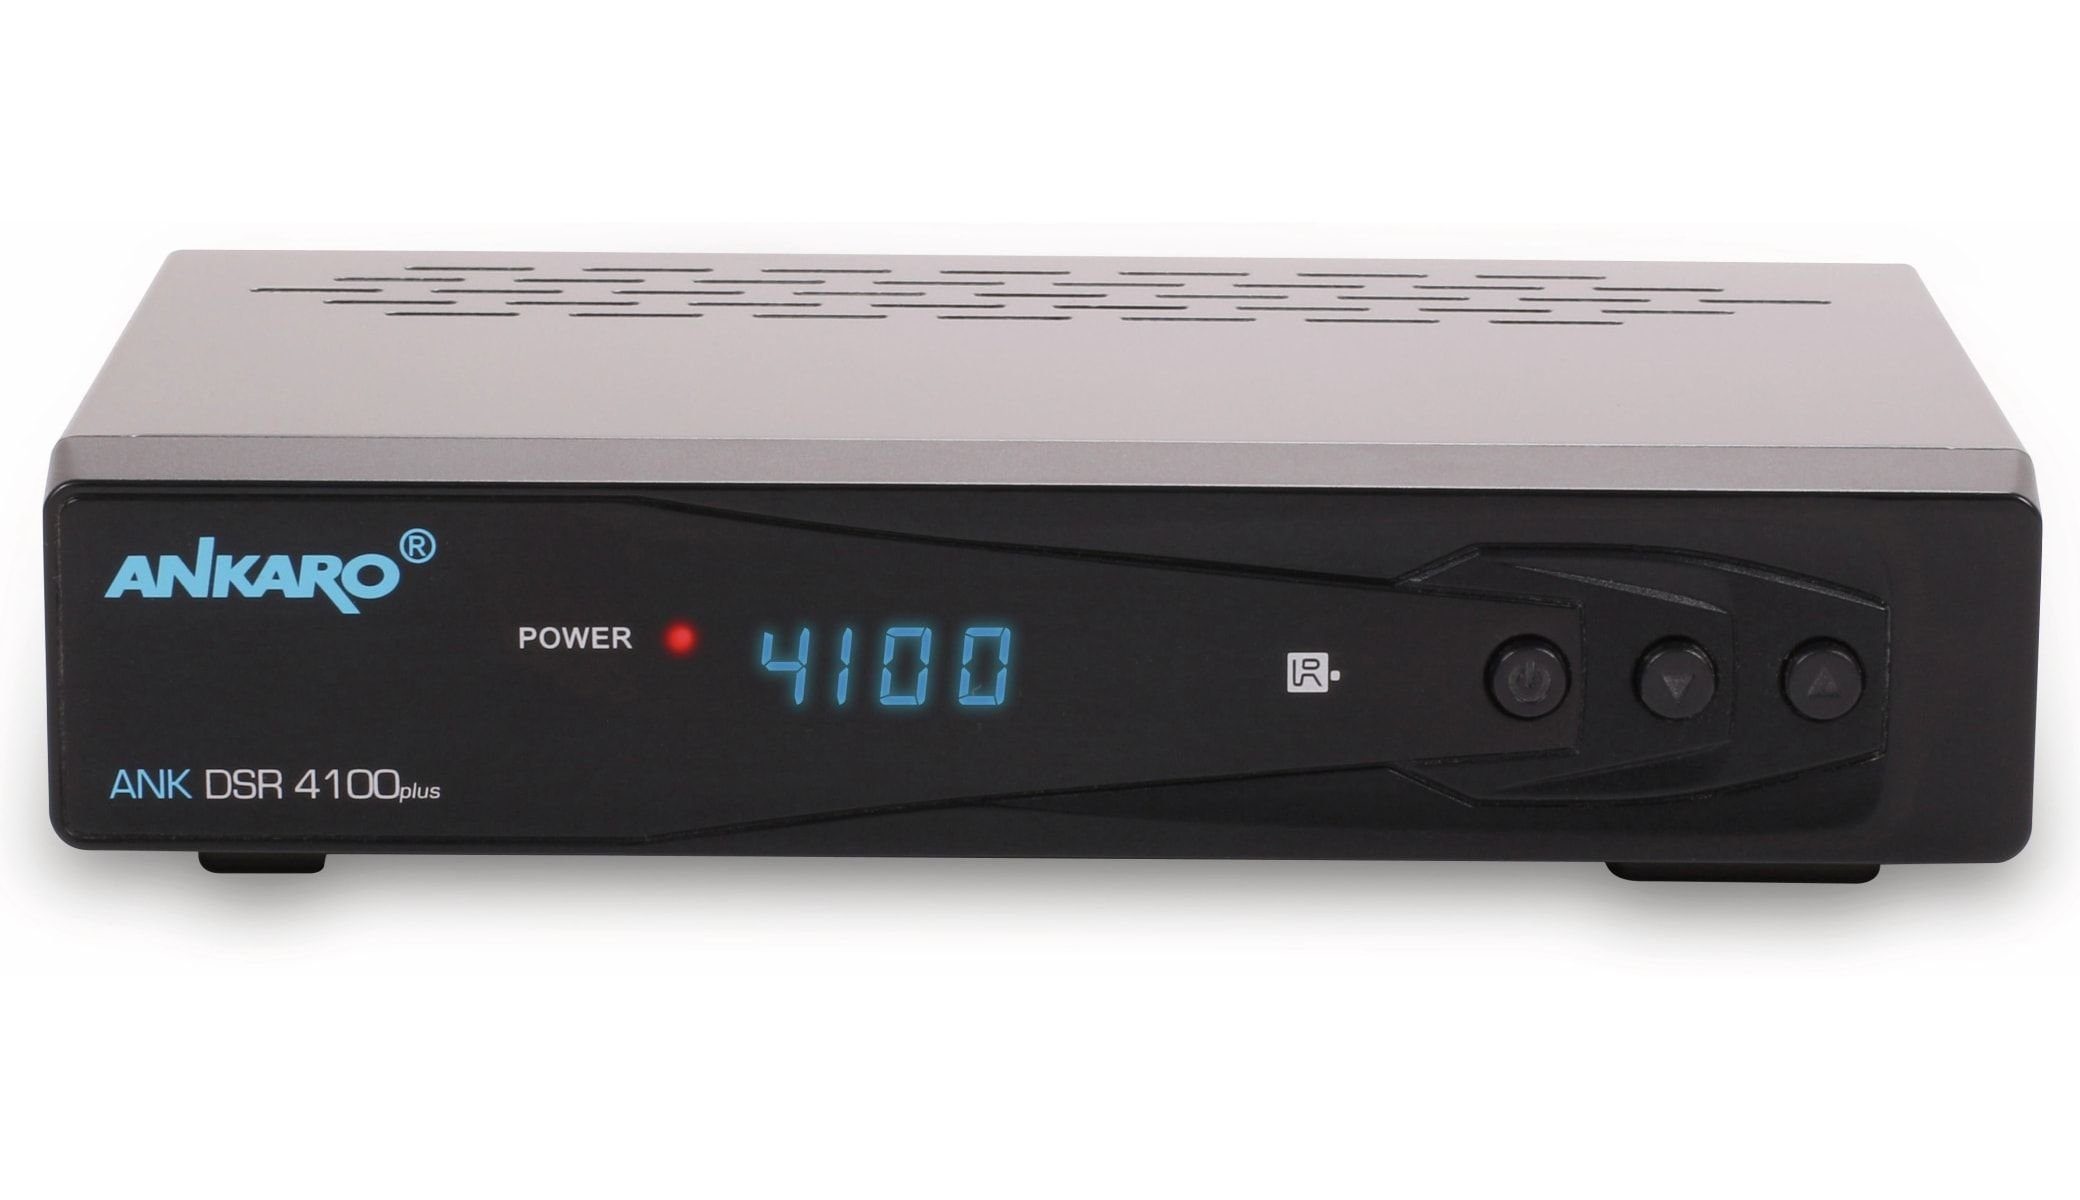 Satellitenreceiver DSR 4100plus Ankaro DVB-S HDTV-Receiver ANKARO